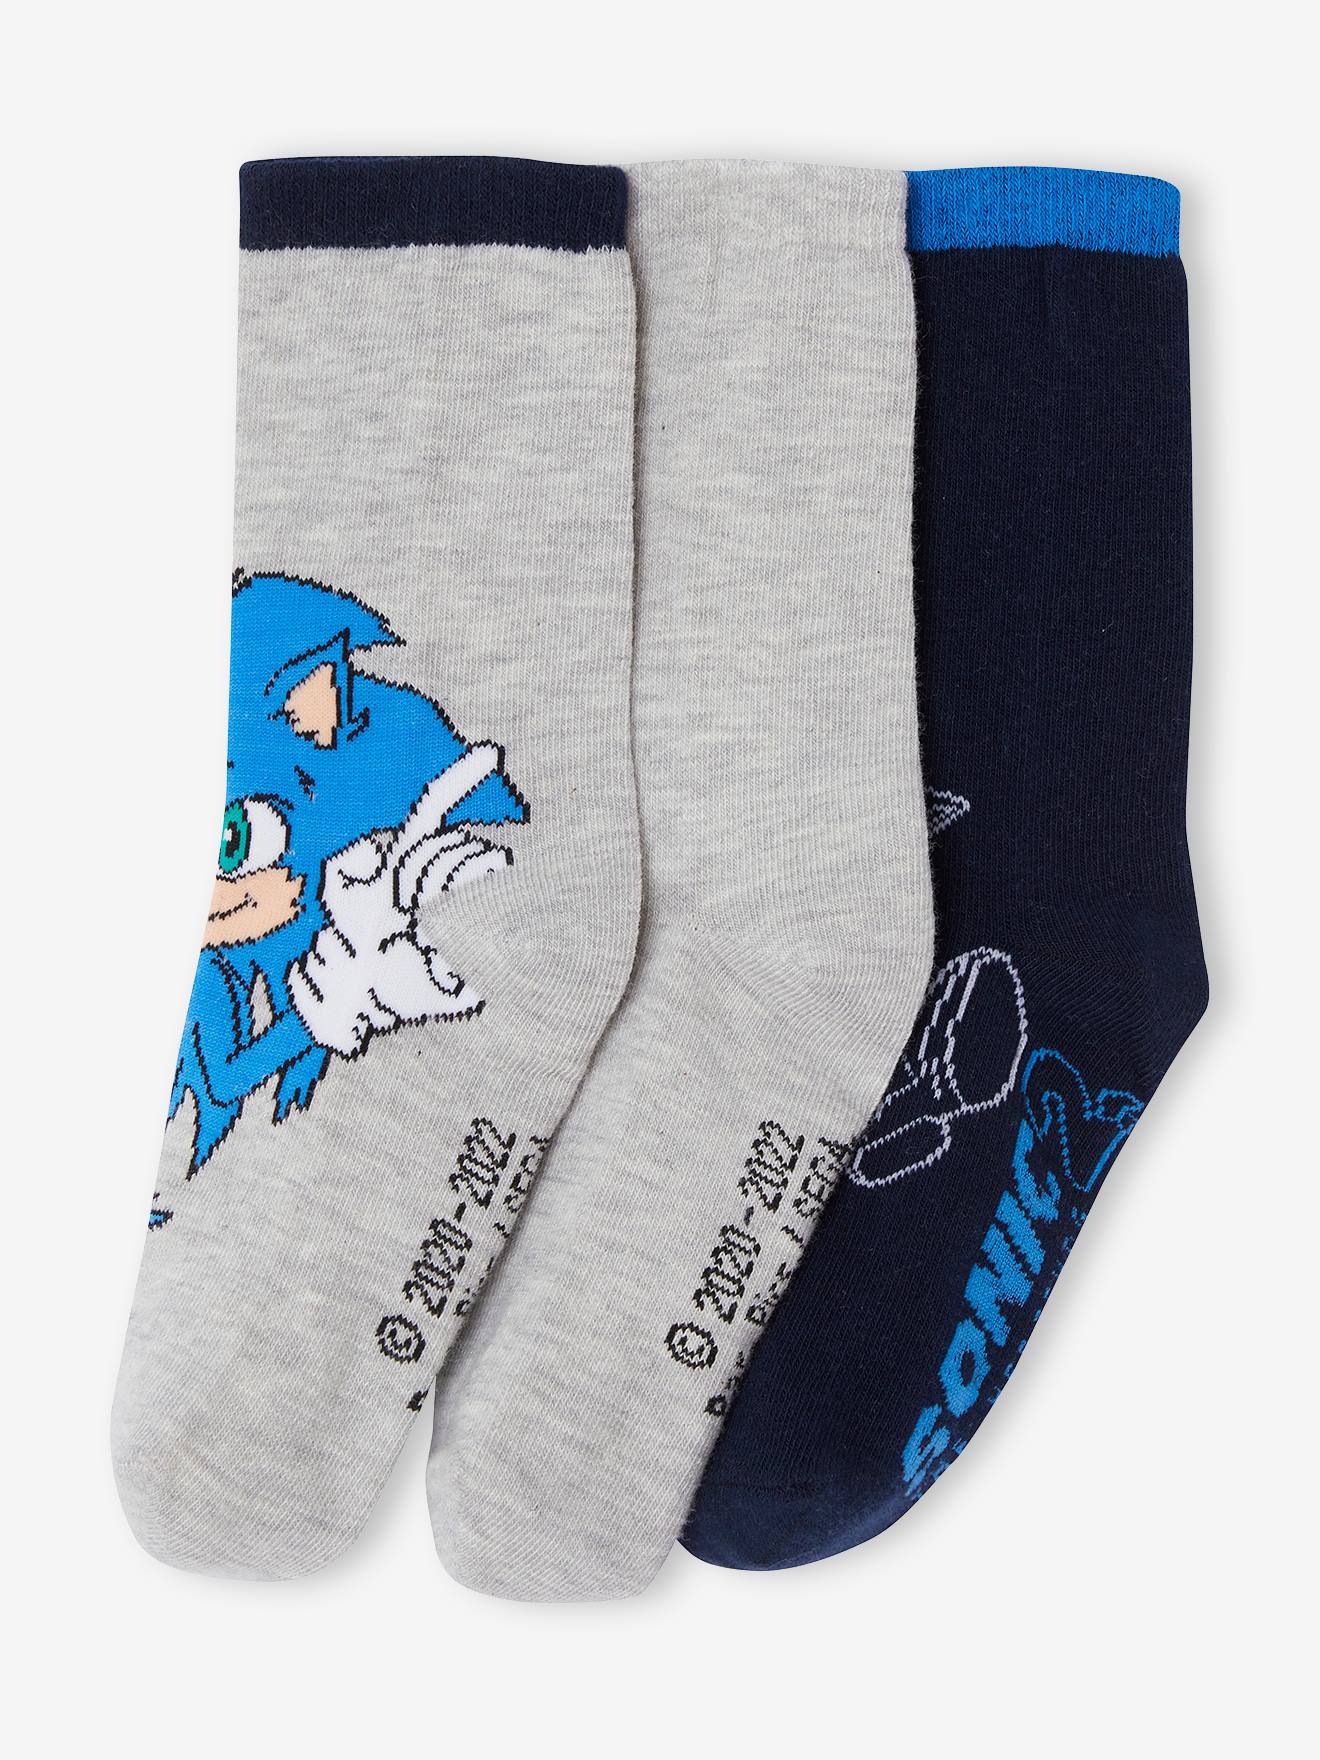 chaussettes de sport avec bandes colorees garcon (lot de 3) bleu